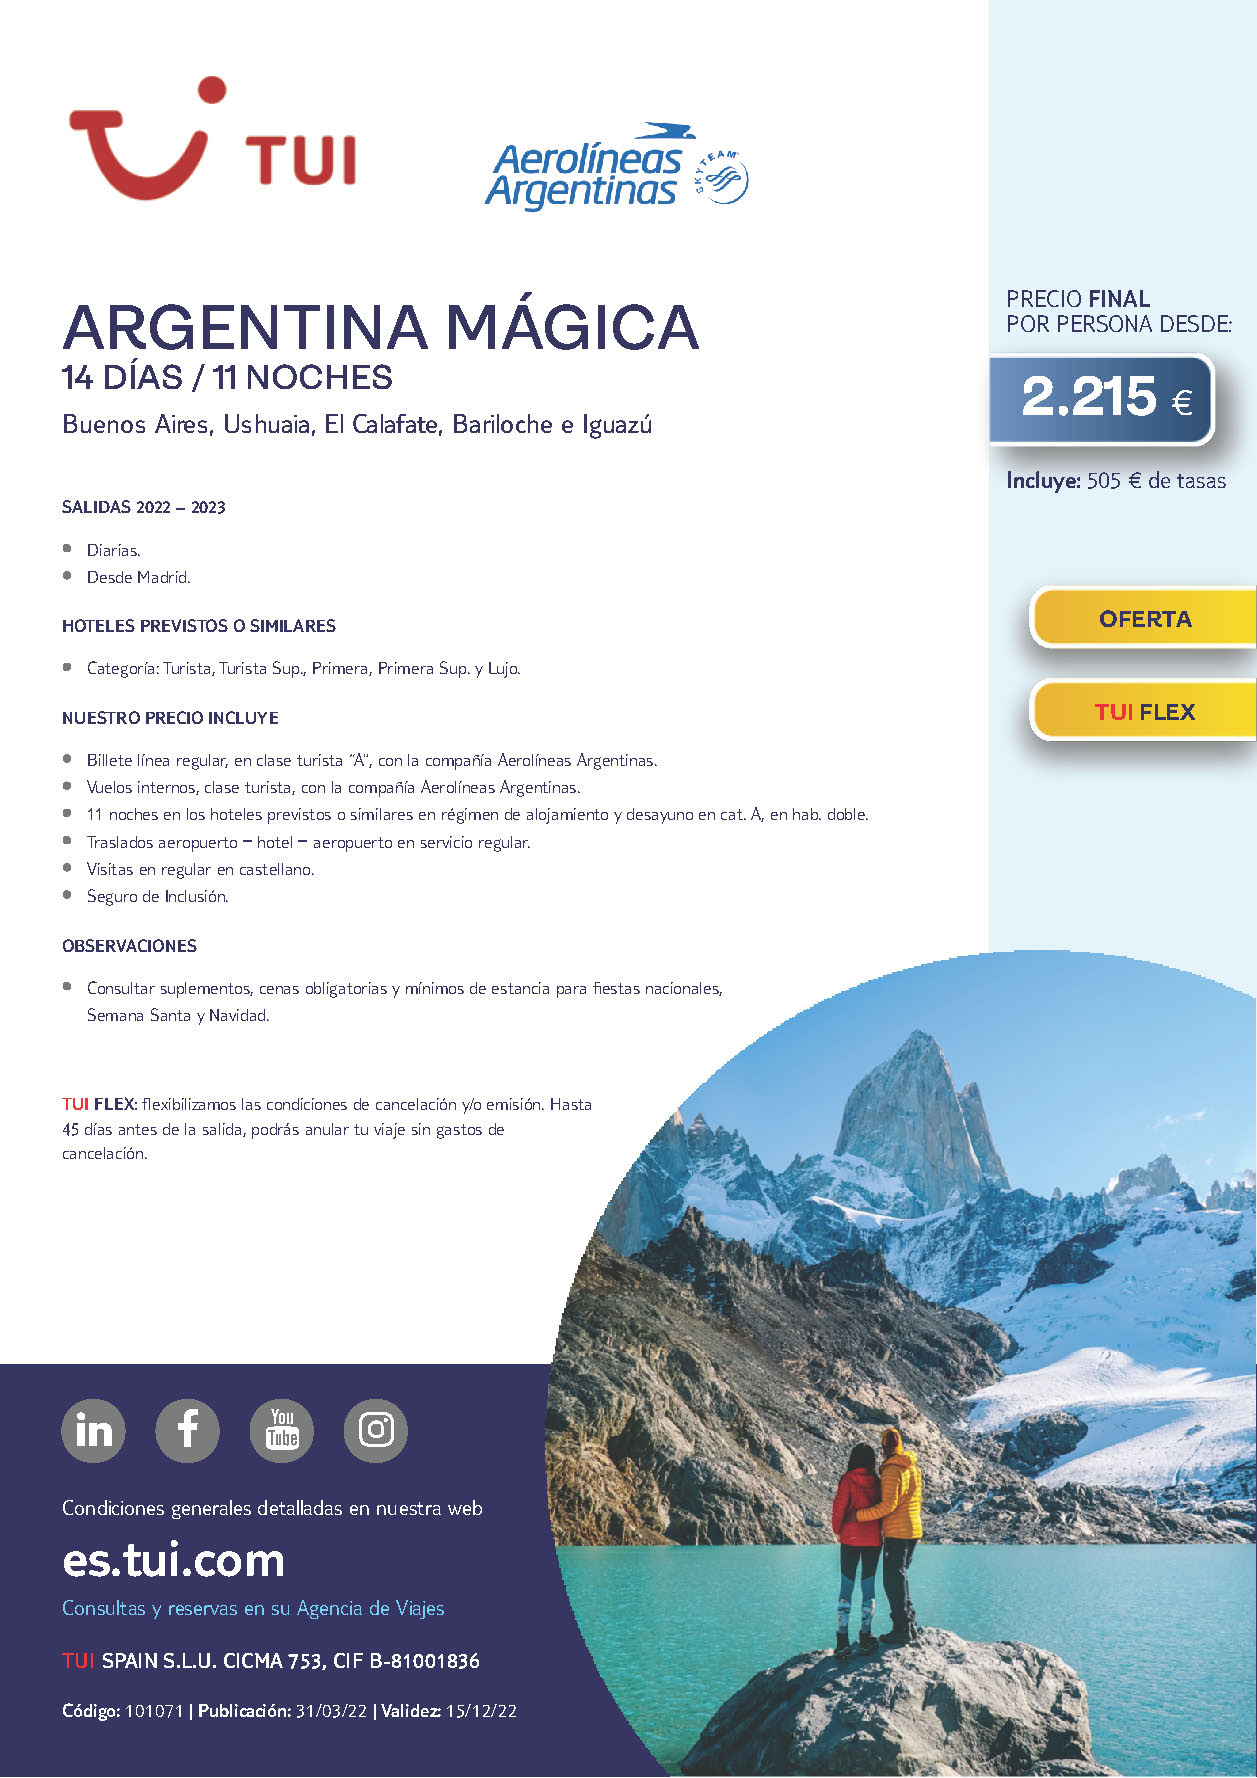 Oferta TUI Argentina Magica 14 dias salidas 2022 y 2023 desde Madrid vuelos directos Aerolineas Argentinas